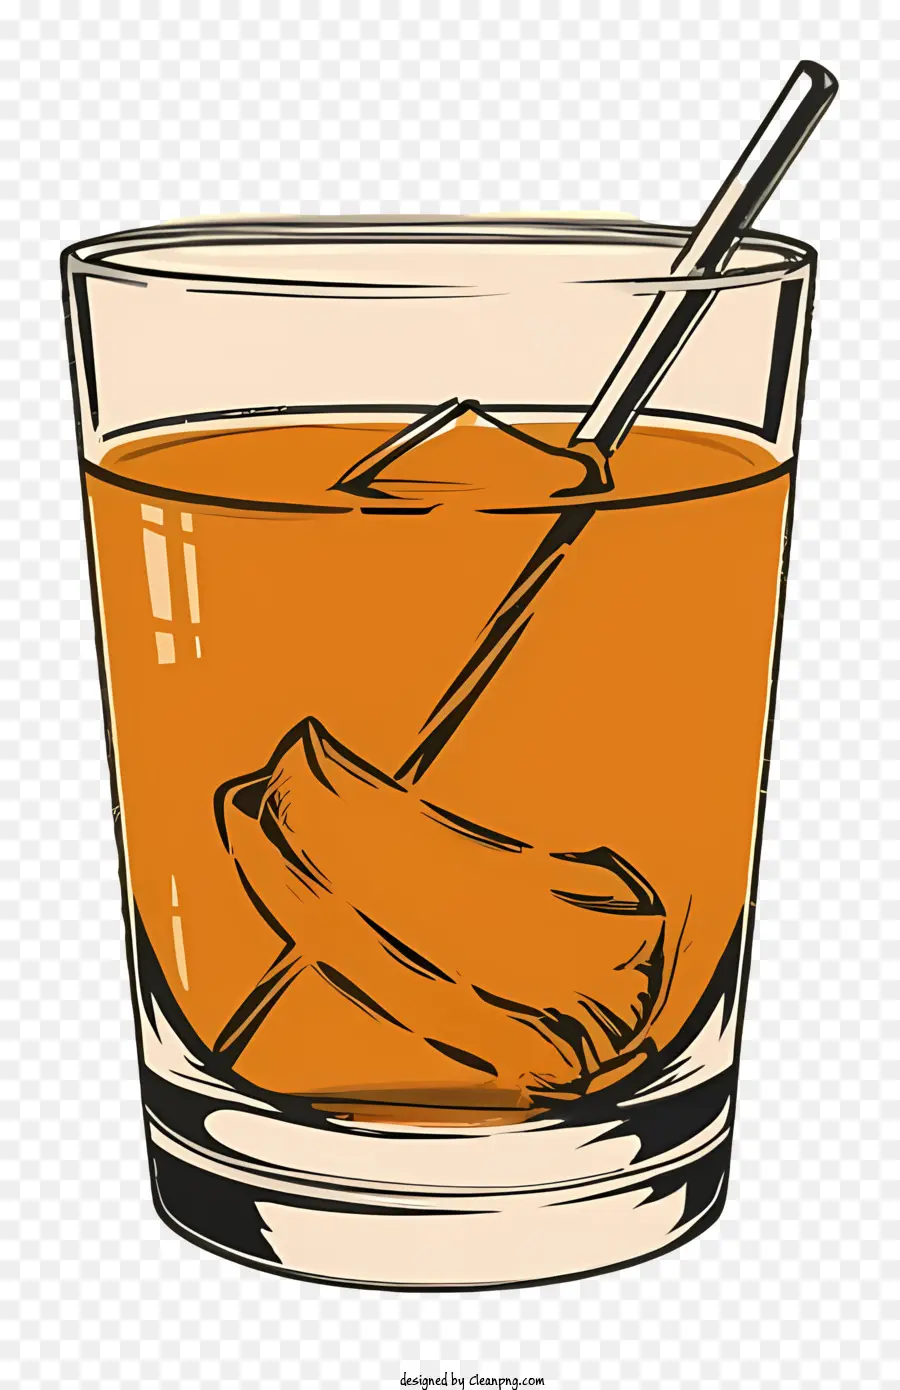 Sommer drink - Glas mit orange Getränk und kleinem Löffel